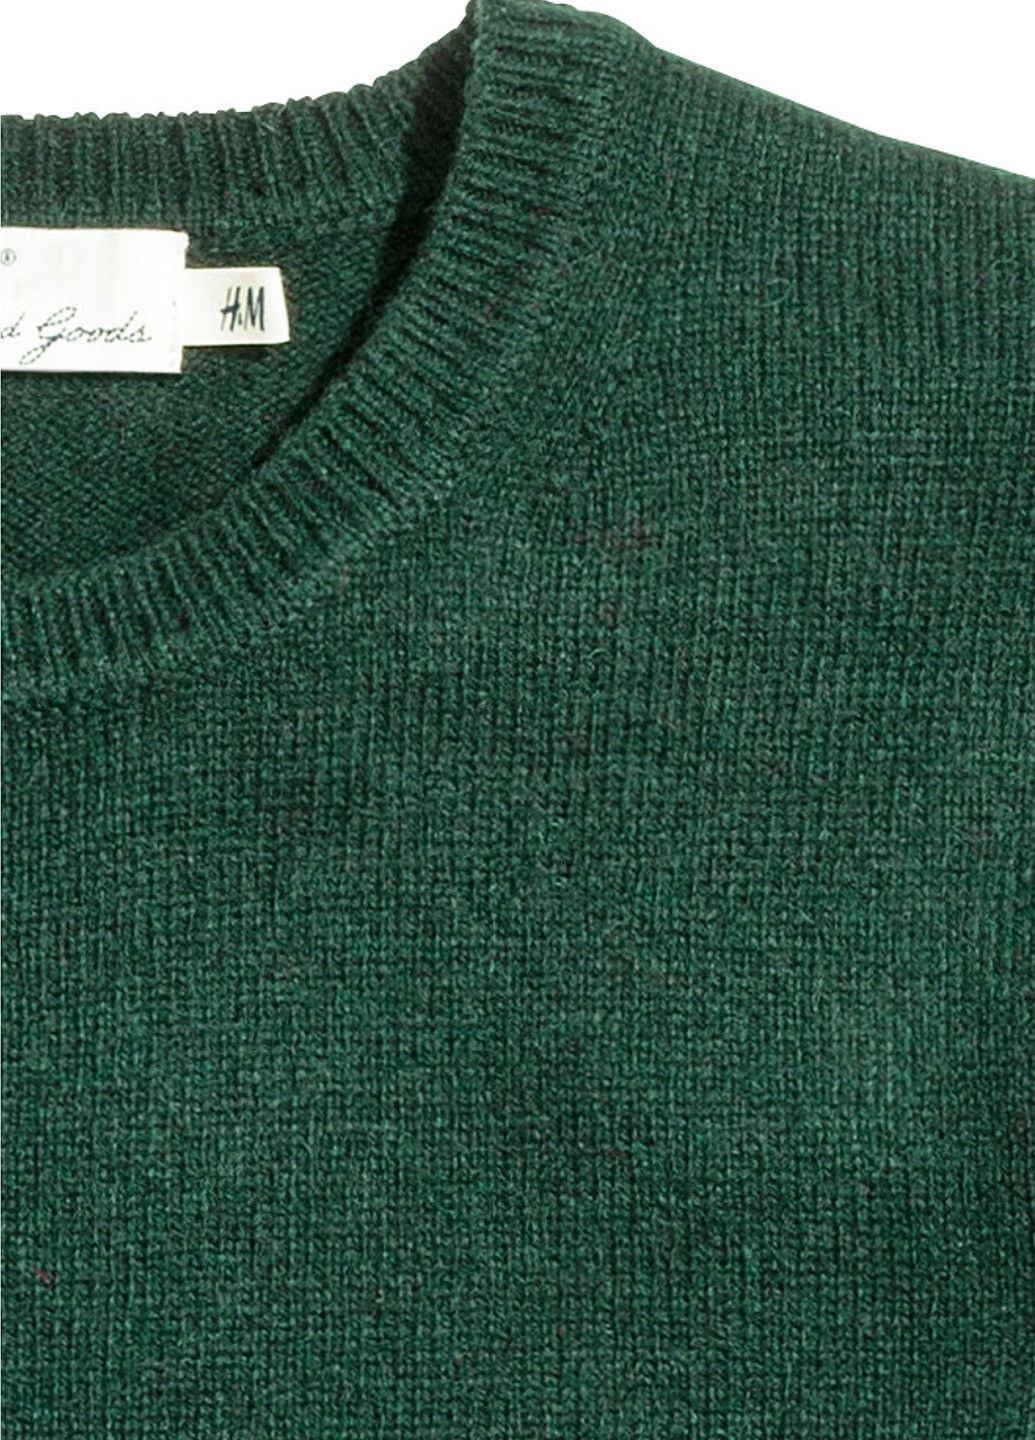 Темно-зеленый зимний светр зимовий джемпер H&M